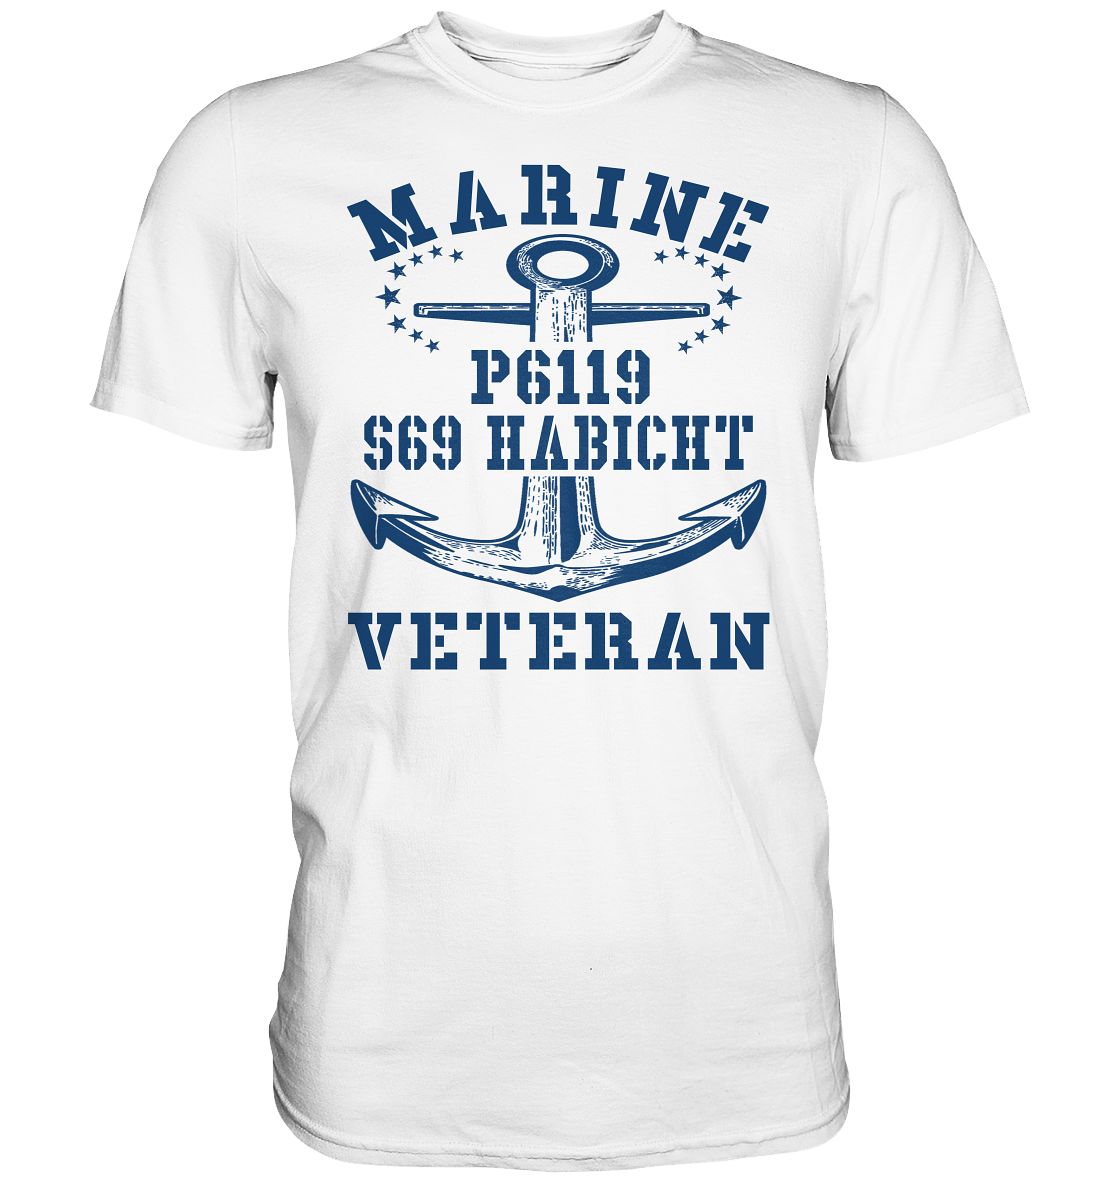 FK-Schnellboot P6119 HABICHT Marine Veteran - Premium Shirt